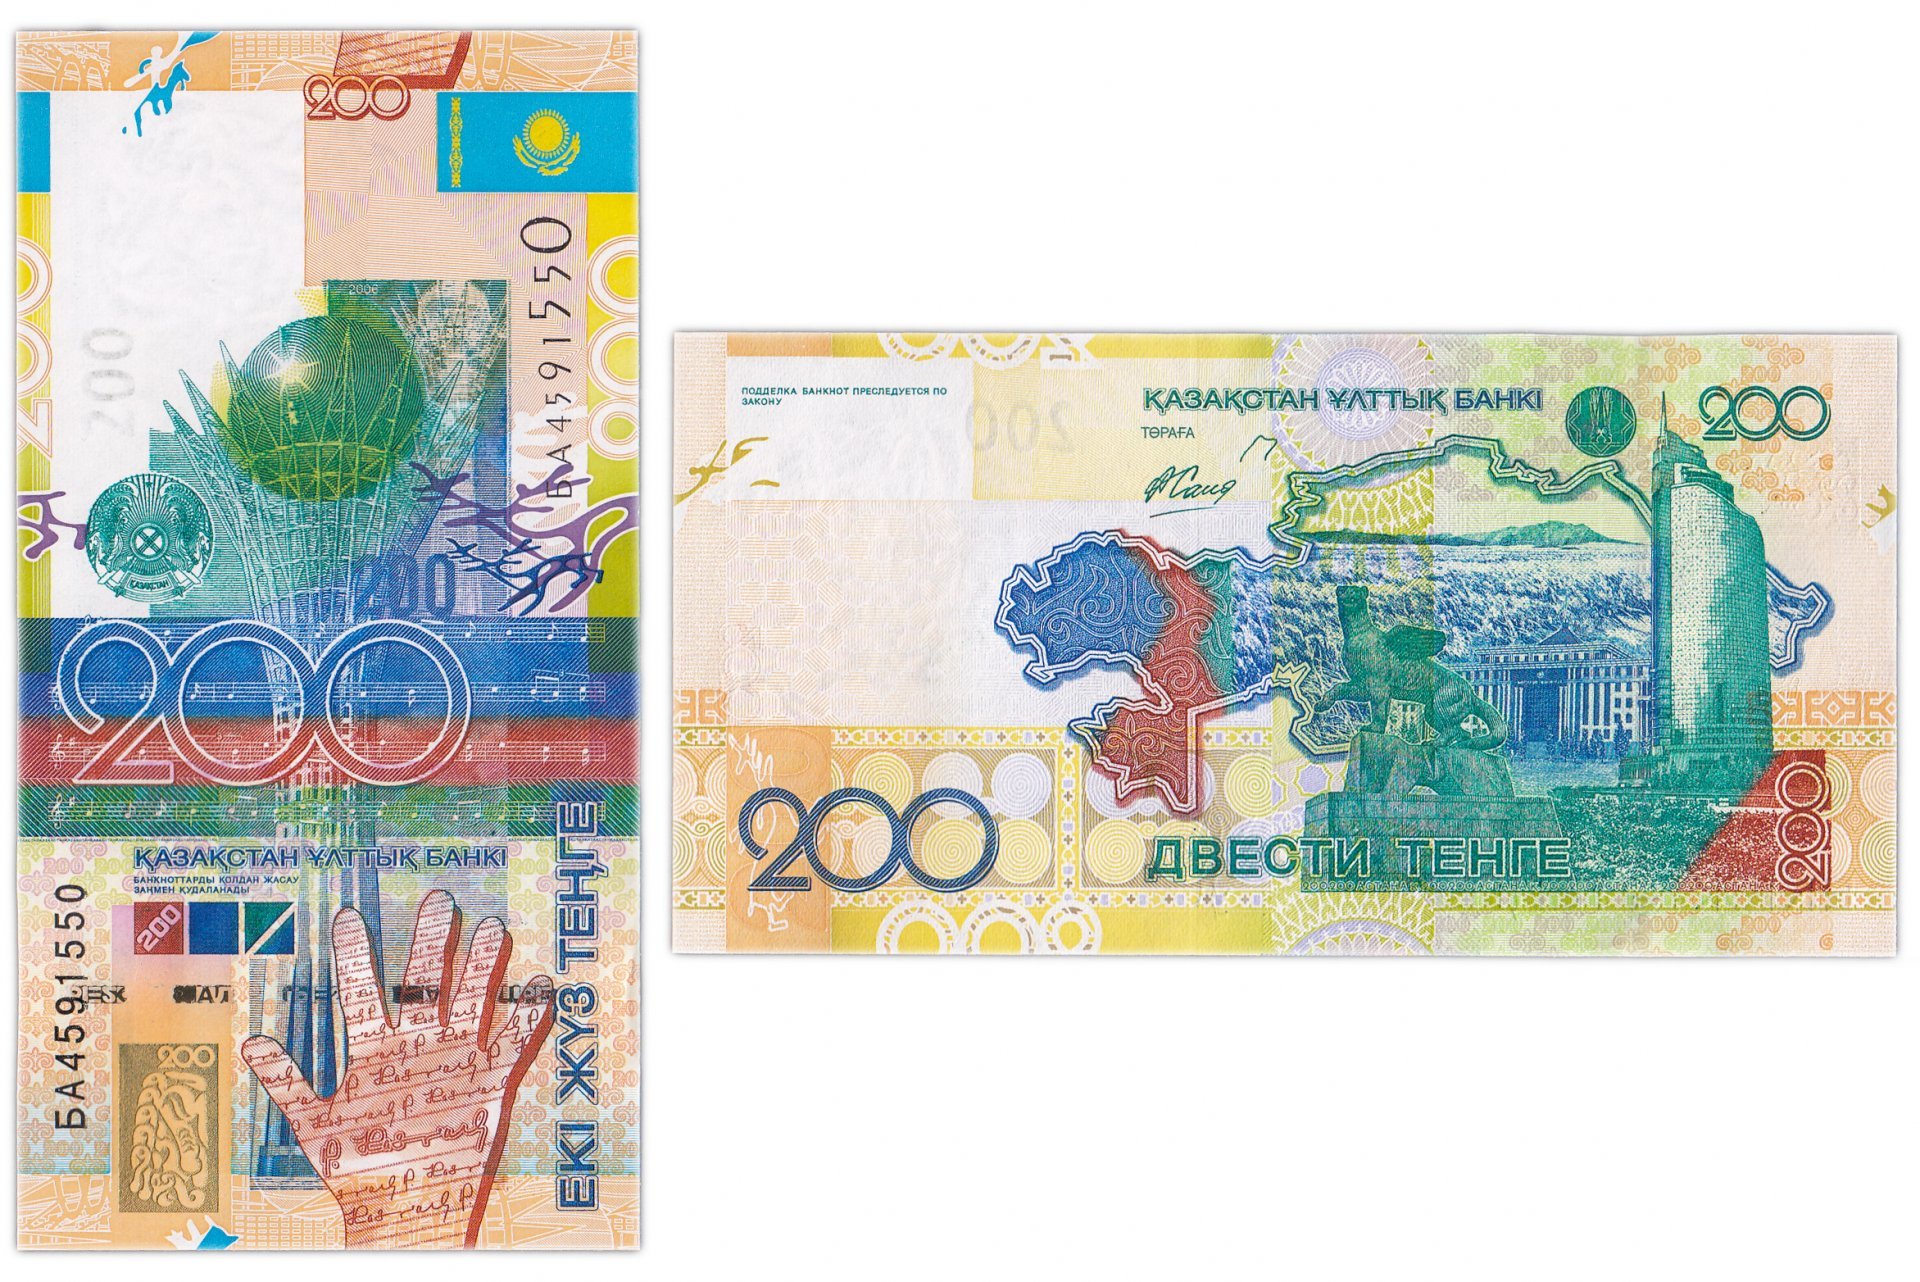 200 тг в рублях. Казахстан 200 тенге 2006 года. 200 Тенге банкнота. Банкноты Казахстана 200 тенге 1999. Тенге бумажные.